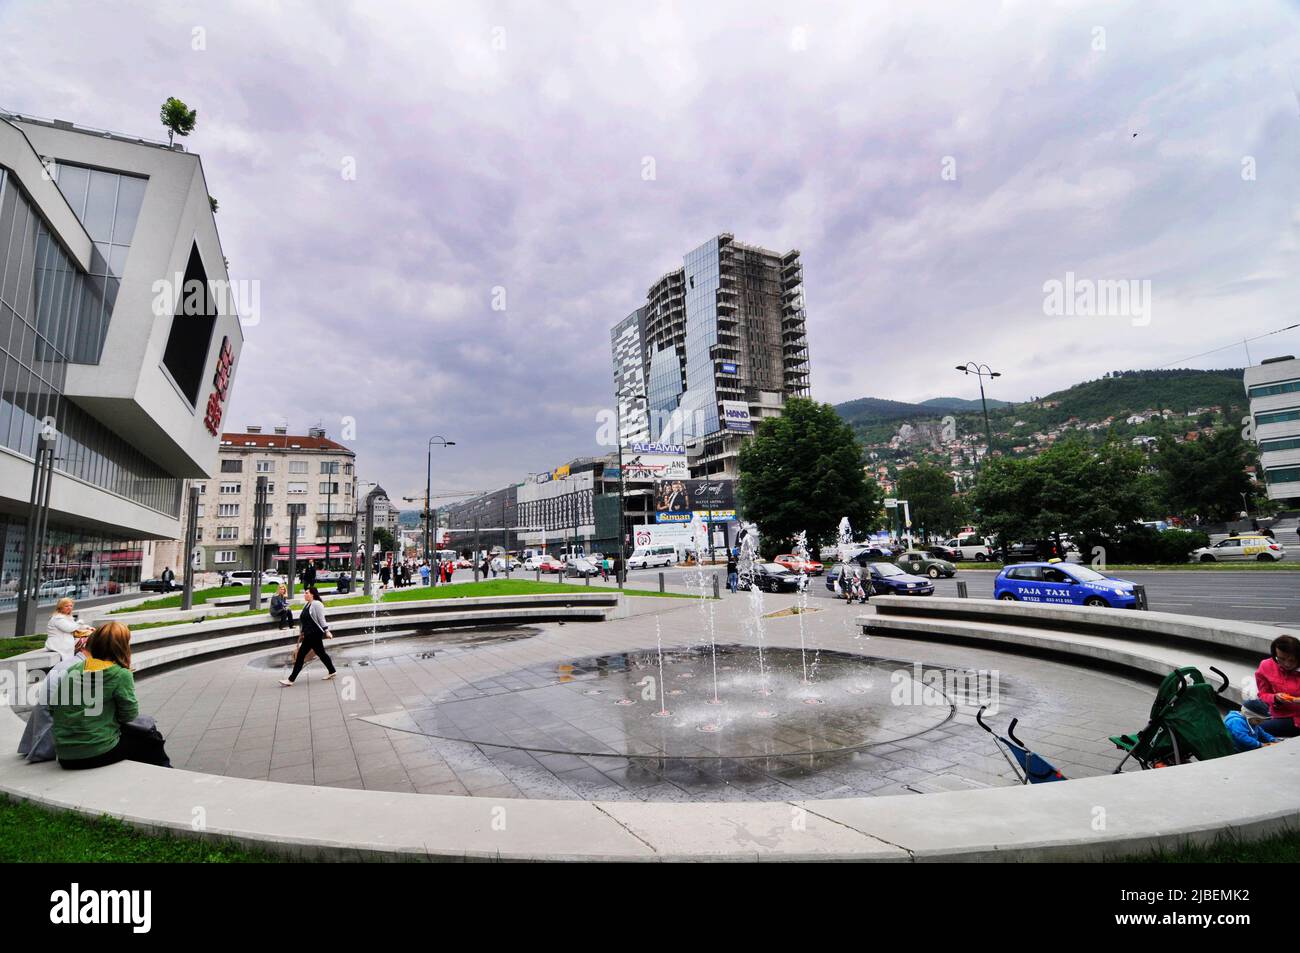 El centro comercial SCC - Sarajevo City Center está en construcción. Sarajevo, Bosnia y Herzegovina. Foto de stock